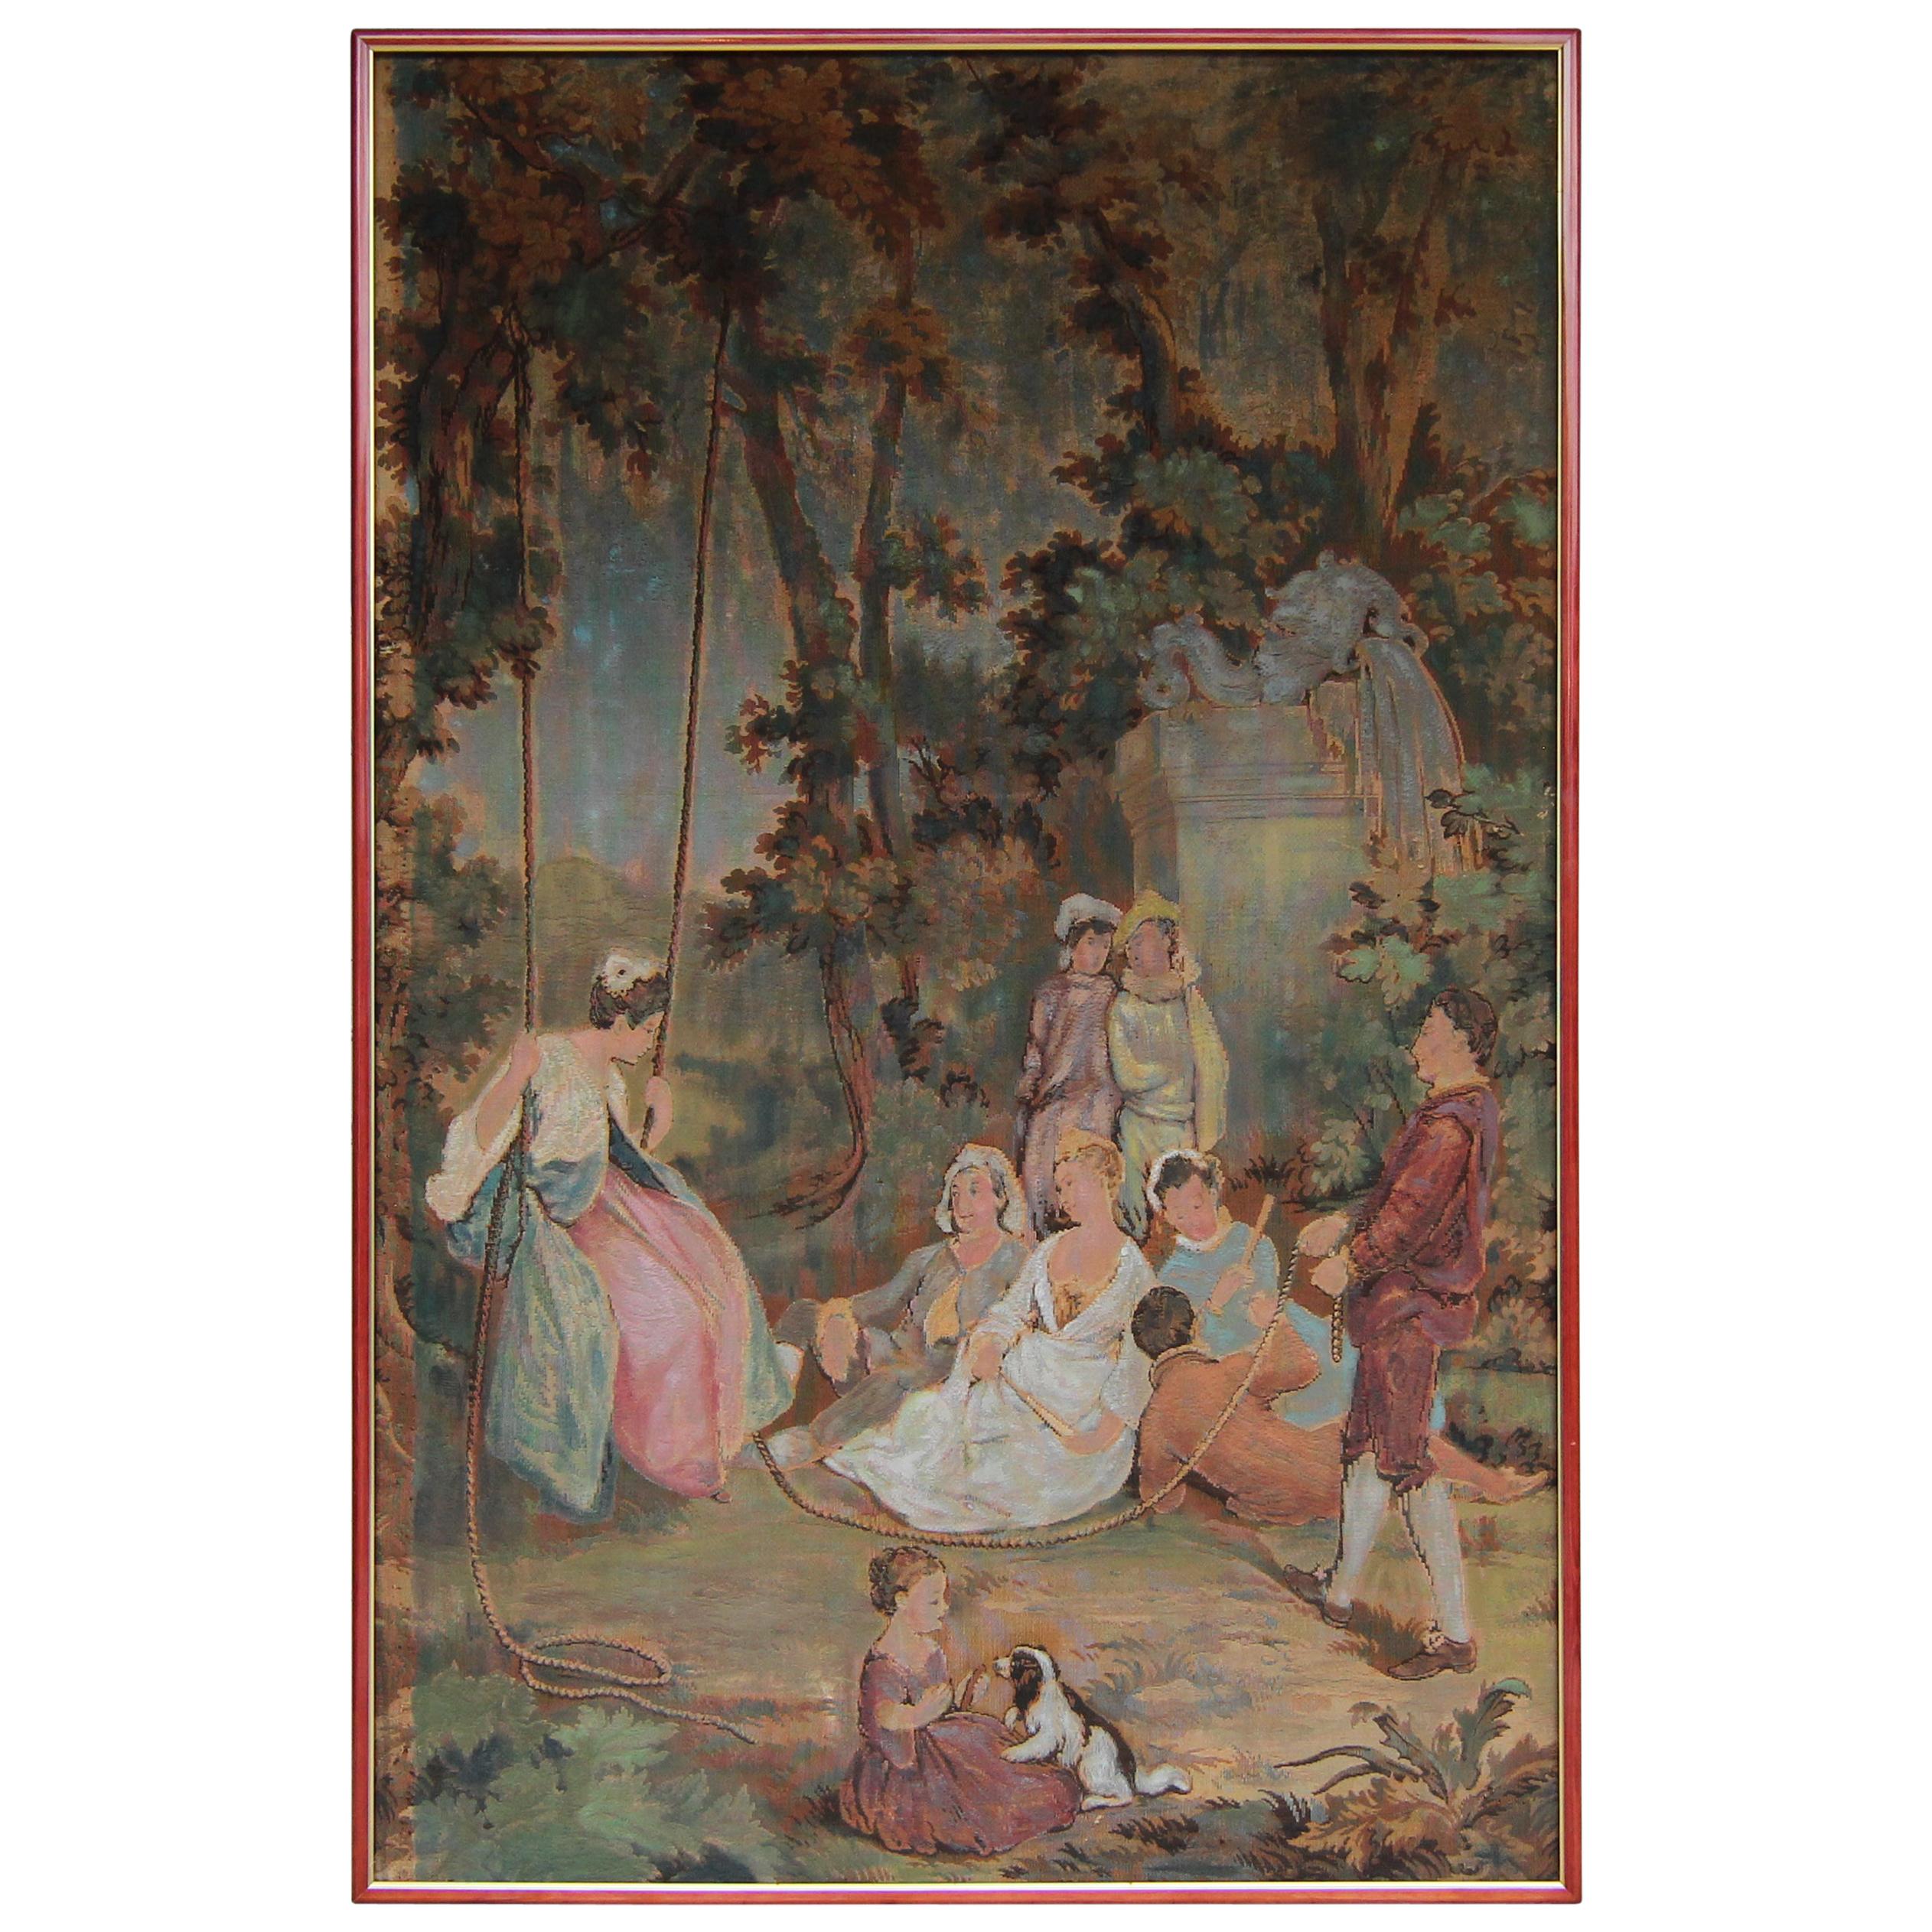 20th Century European Romantic Framed Gobelin or Tapestry